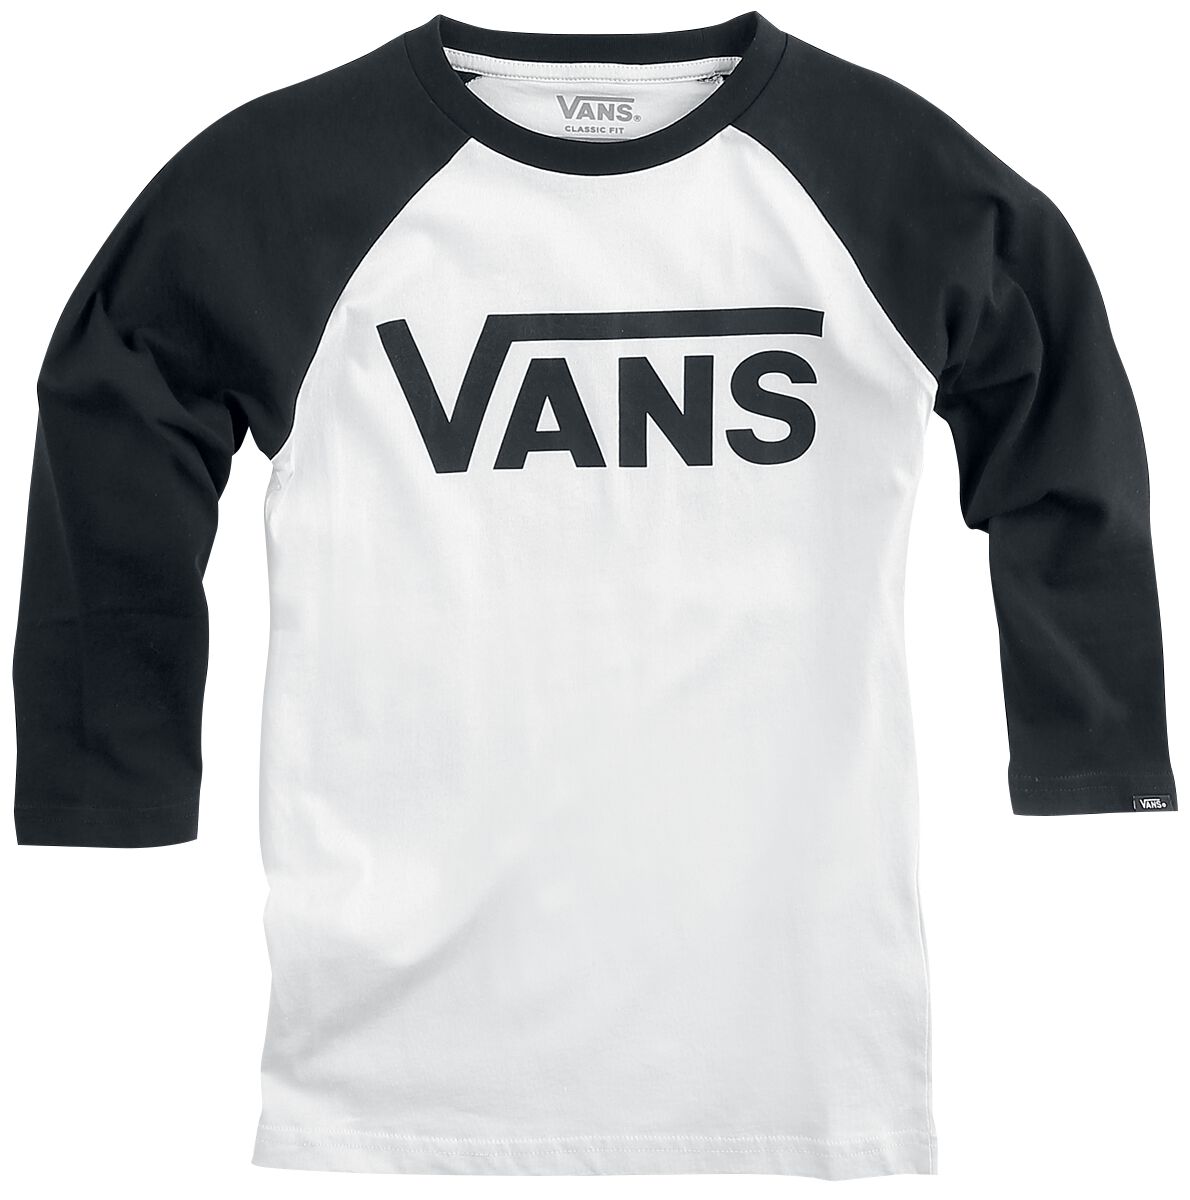 Vans Kids Langarmshirt - BY VANS Classic Raglan - S bis XL - für Mädchen & Jungen - Größe XL - schwarz/weiß